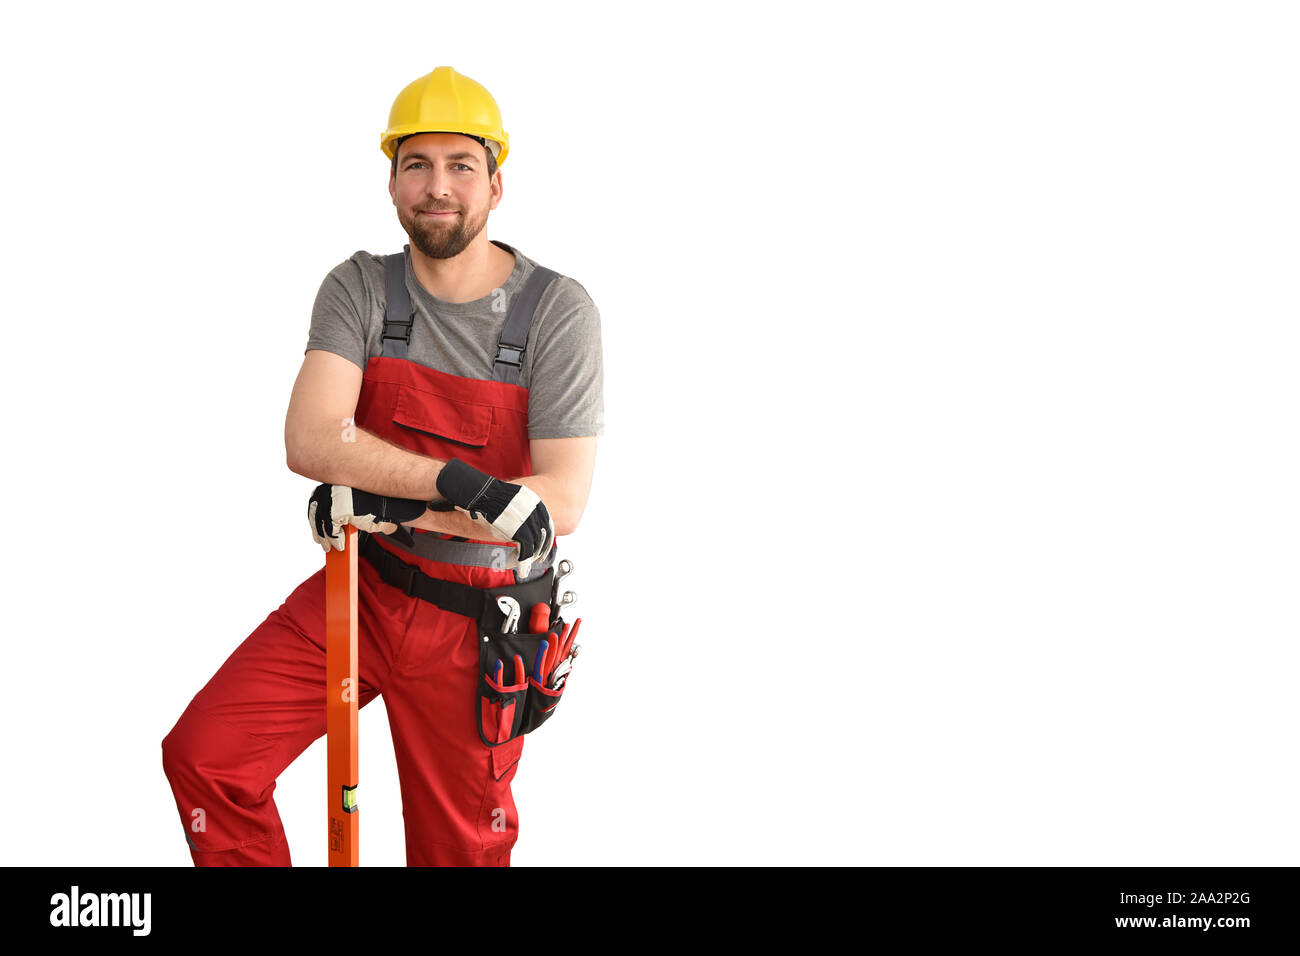 Freundliche Bauarbeiter - Handwerker in Arbeitskleidung mit einer Wasserwaage auf weißem Hintergrund Stockfoto